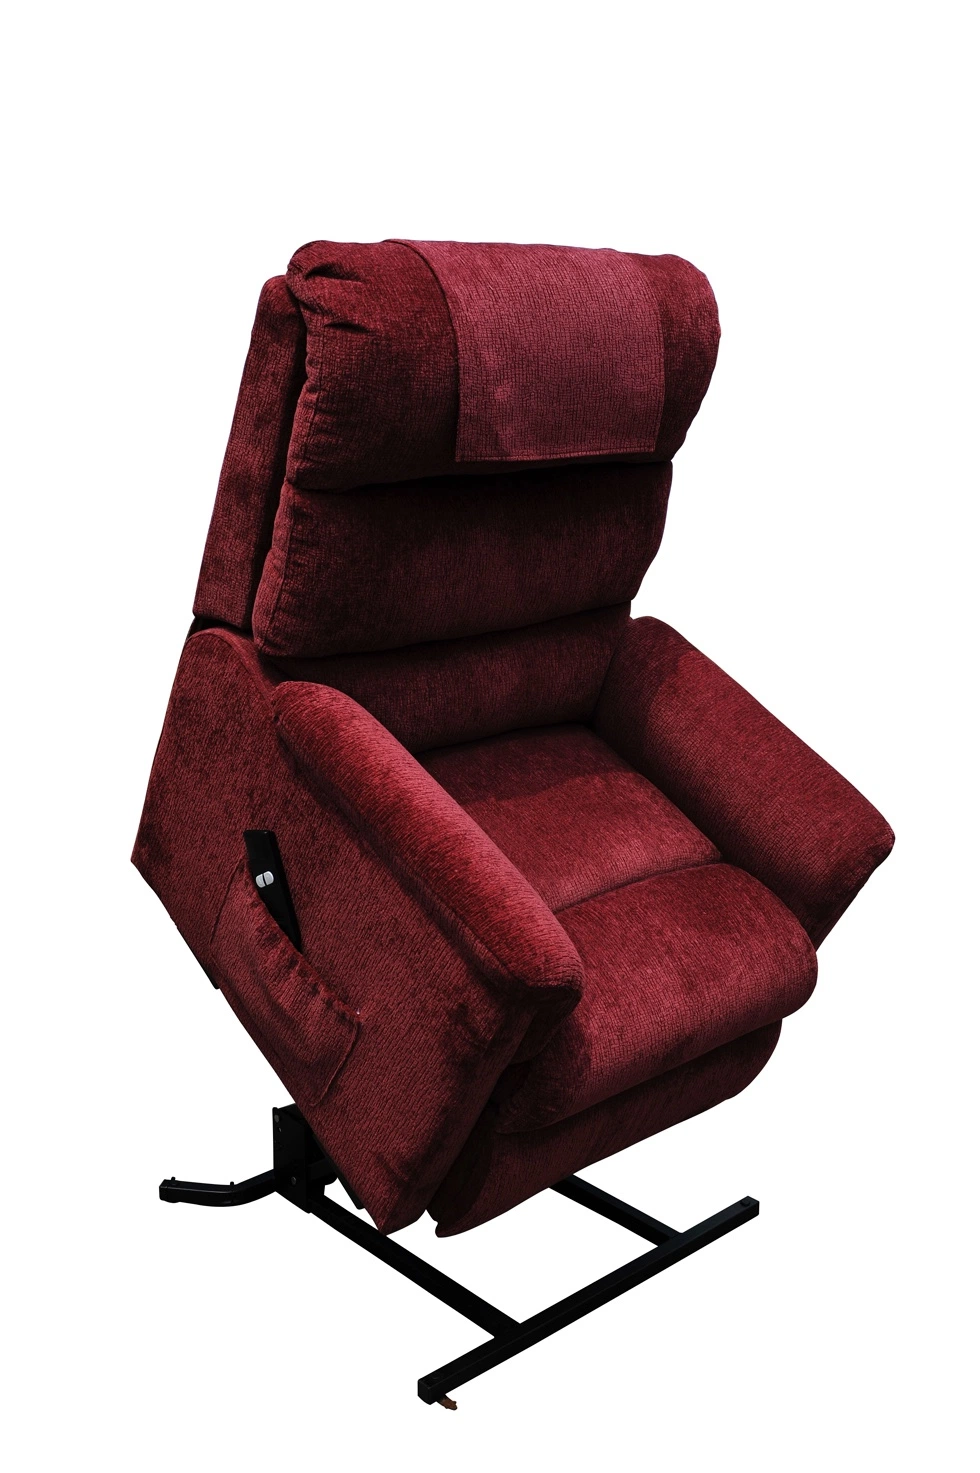 كرسي كهربائي للرفع مصنوع من مقاعد التدليك مع سرير تدليك من الجلد وأريكة يمكن تحويلها إلى سرير سعر رخيص